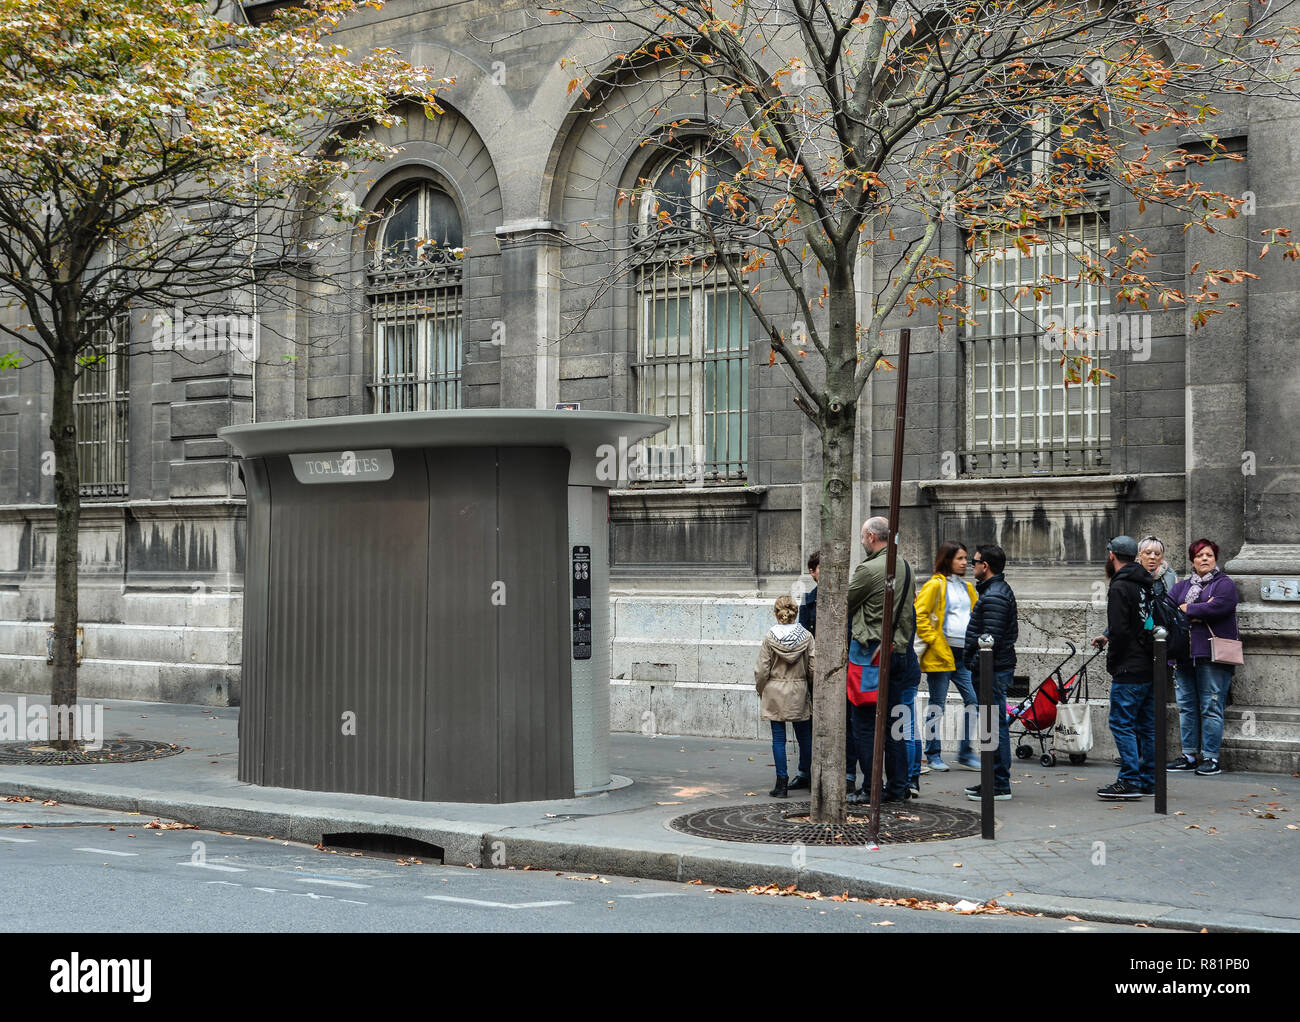 Parigi, Francia - Ott 2, 2018. La coda di persone si erge in previsione di visitare la libera wc su strada al centro cittadino di Parigi. Foto Stock